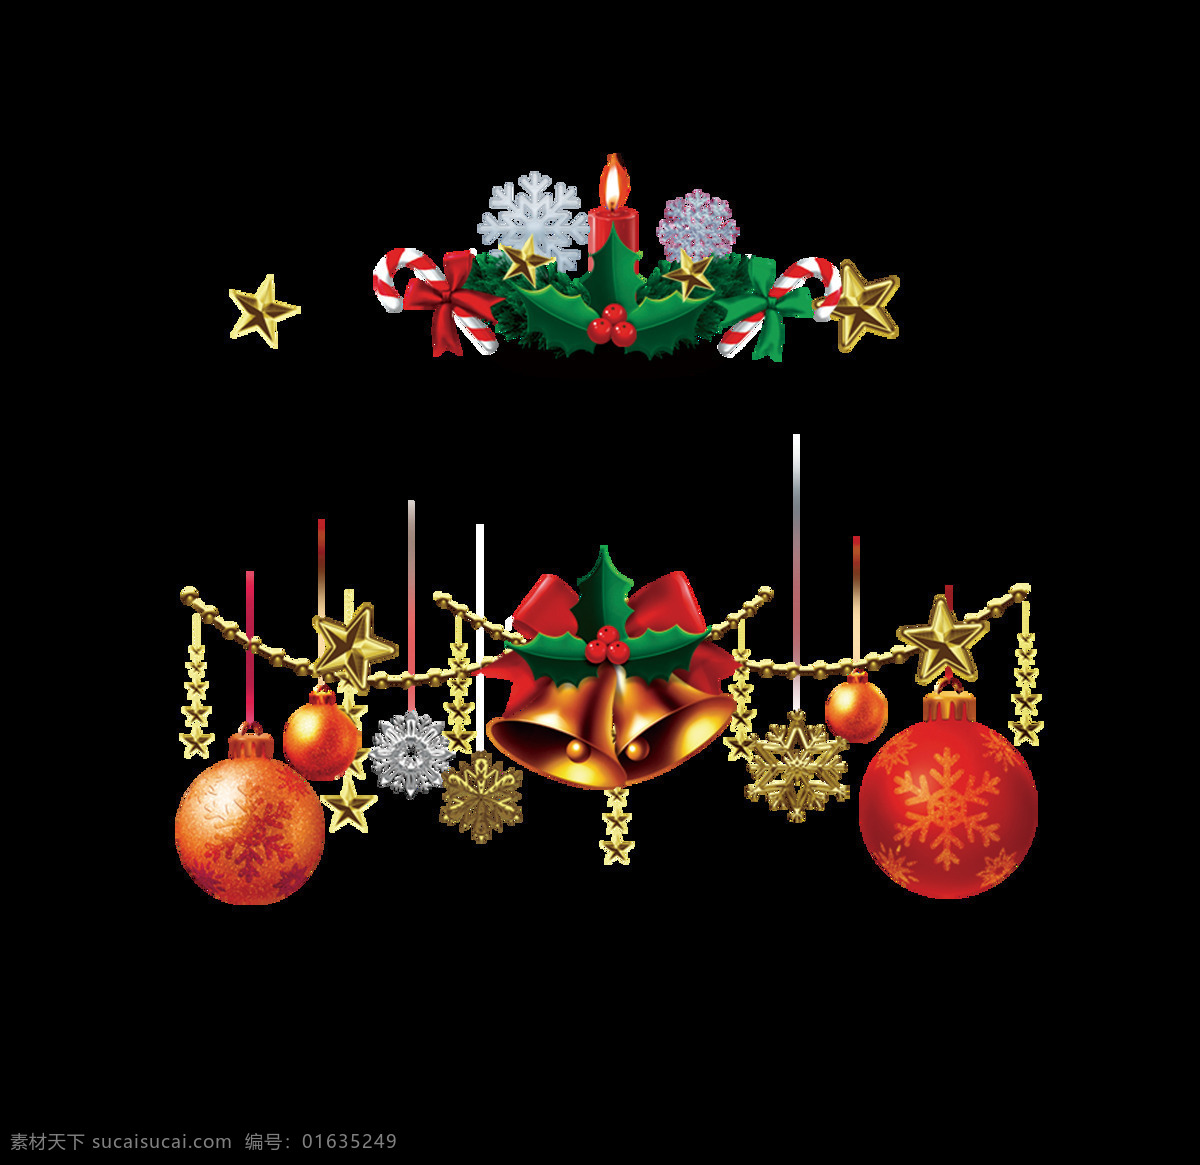 圣诞 装饰 挂饰 元素 png元素 表演 彩球 节日 铃铛 免抠元素 圣诞节 透明素材 雪花